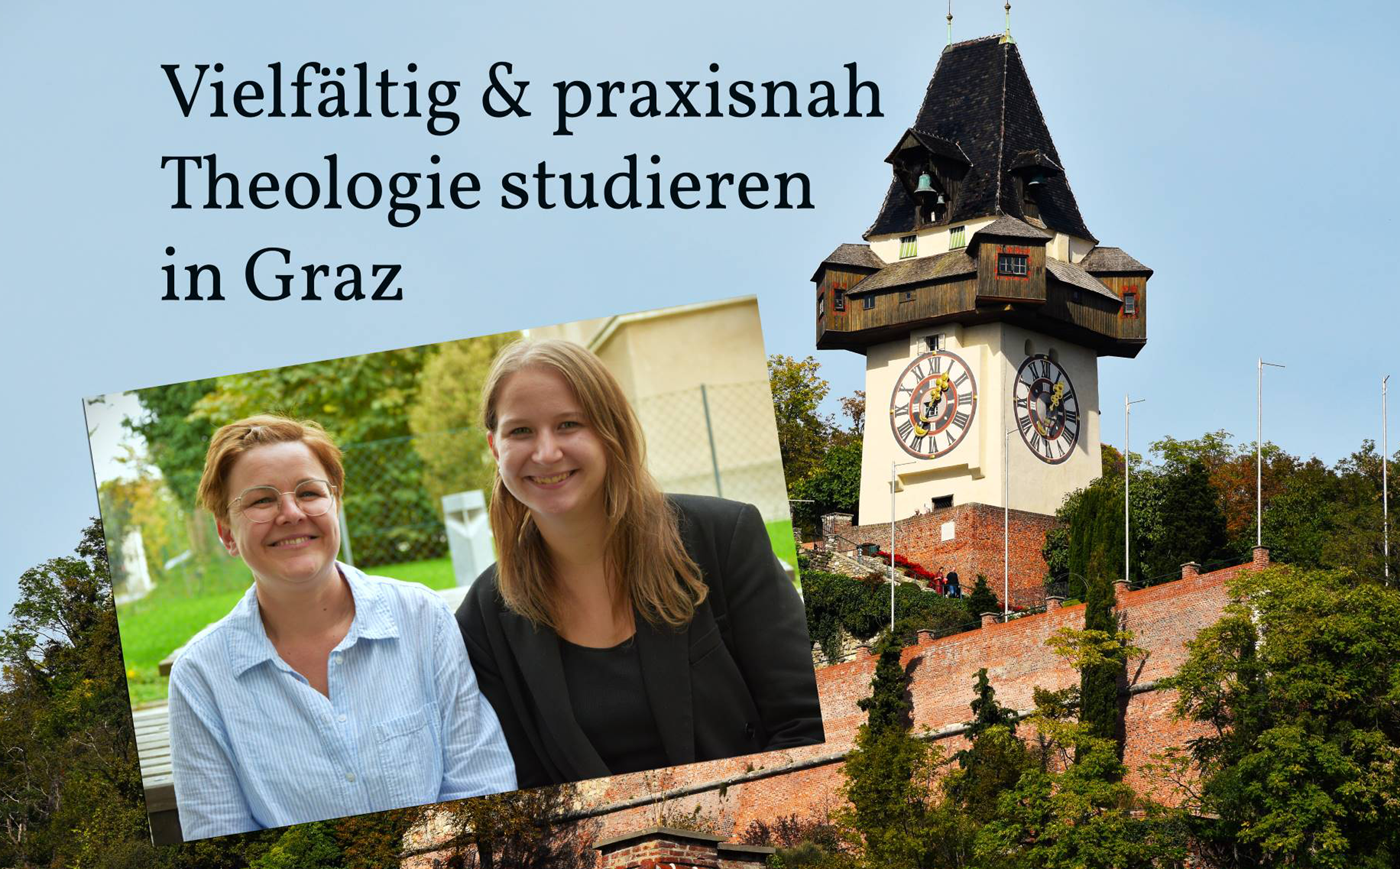 Vielfältig & praxisnah: Theologie studieren in Graz